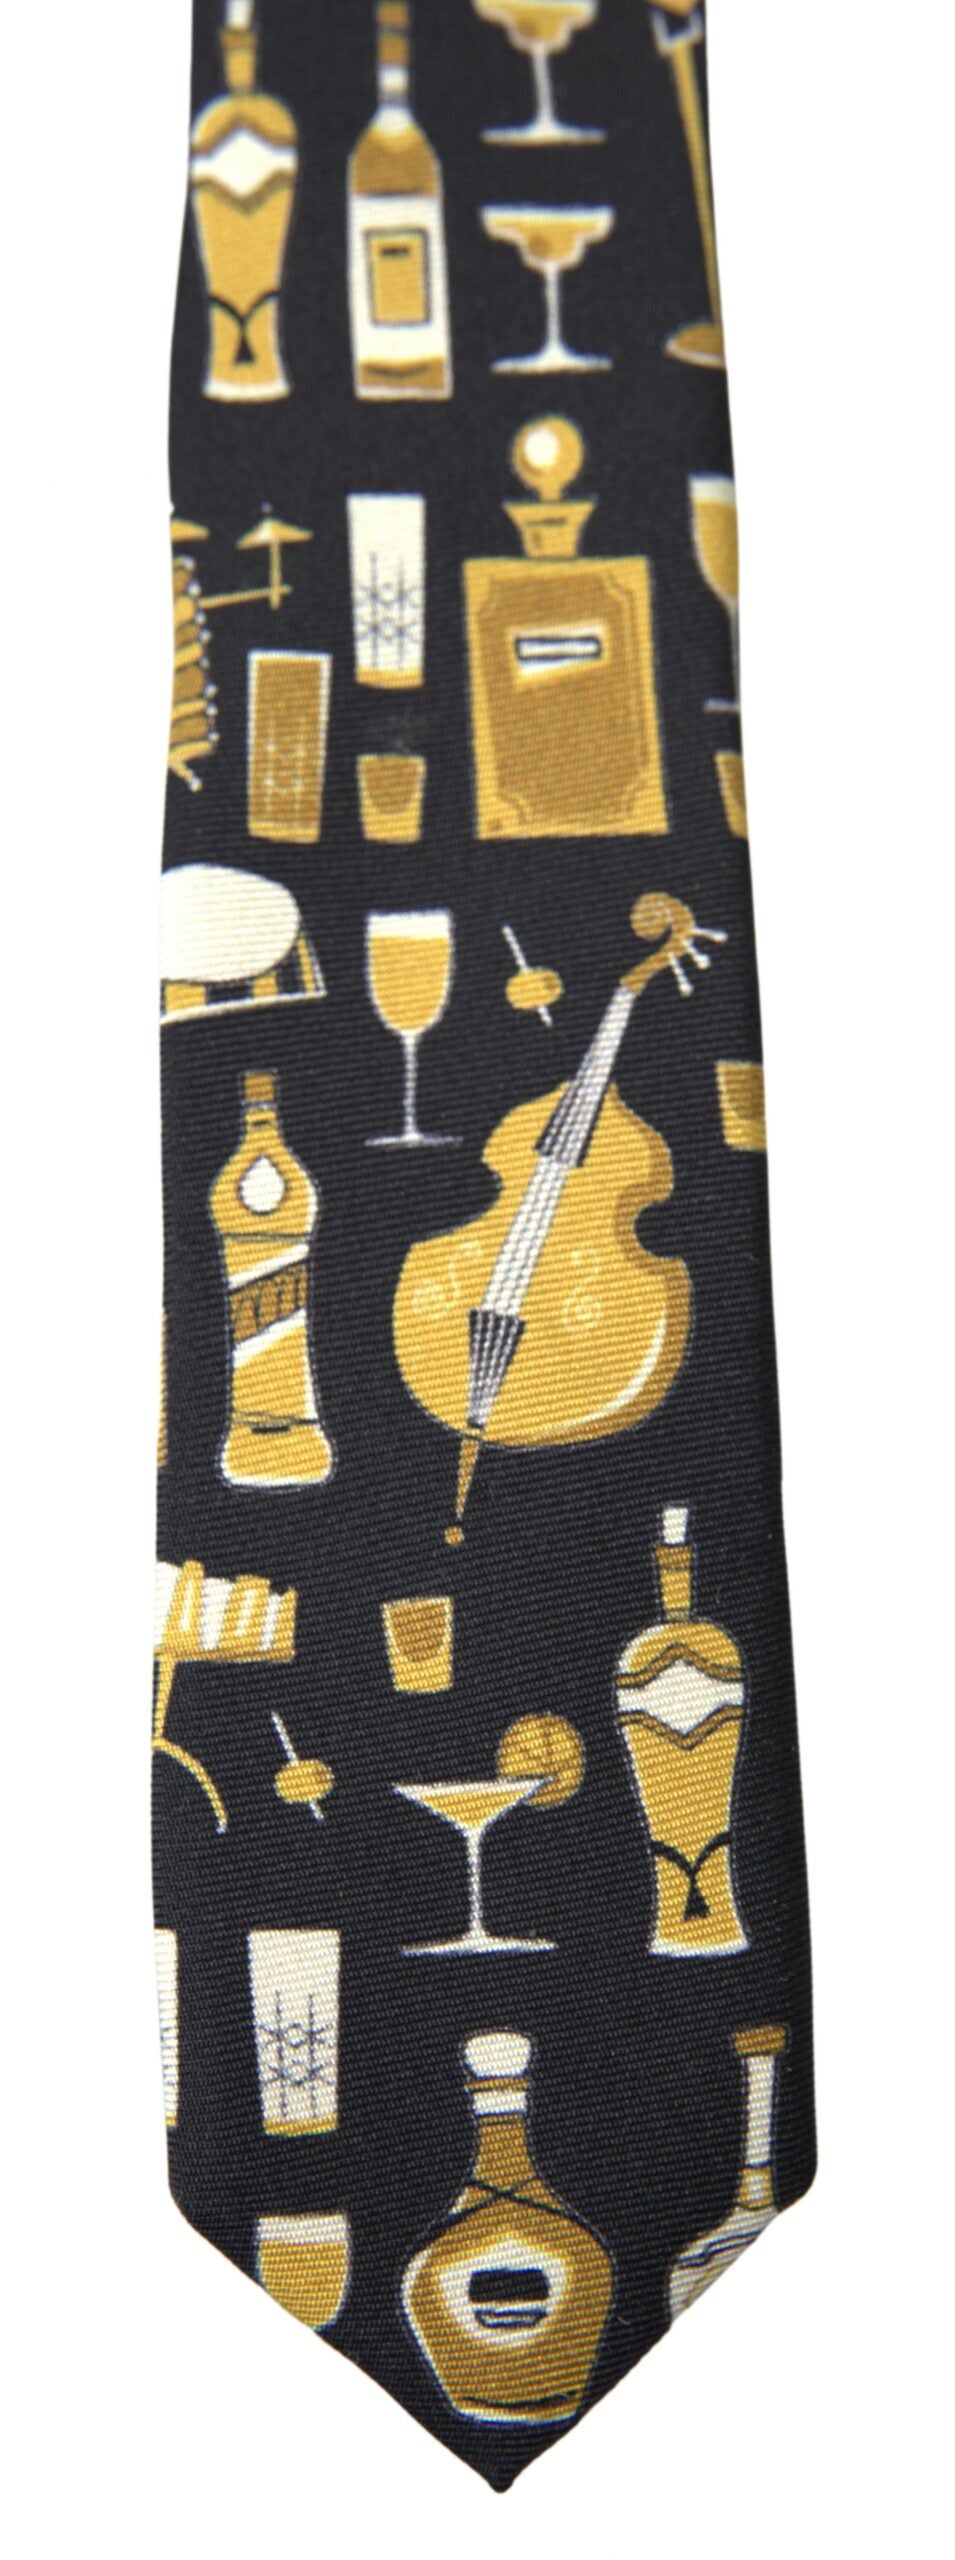 Dolce & Gabbana Black Yellow Musical Instrument Print Necktie Tie